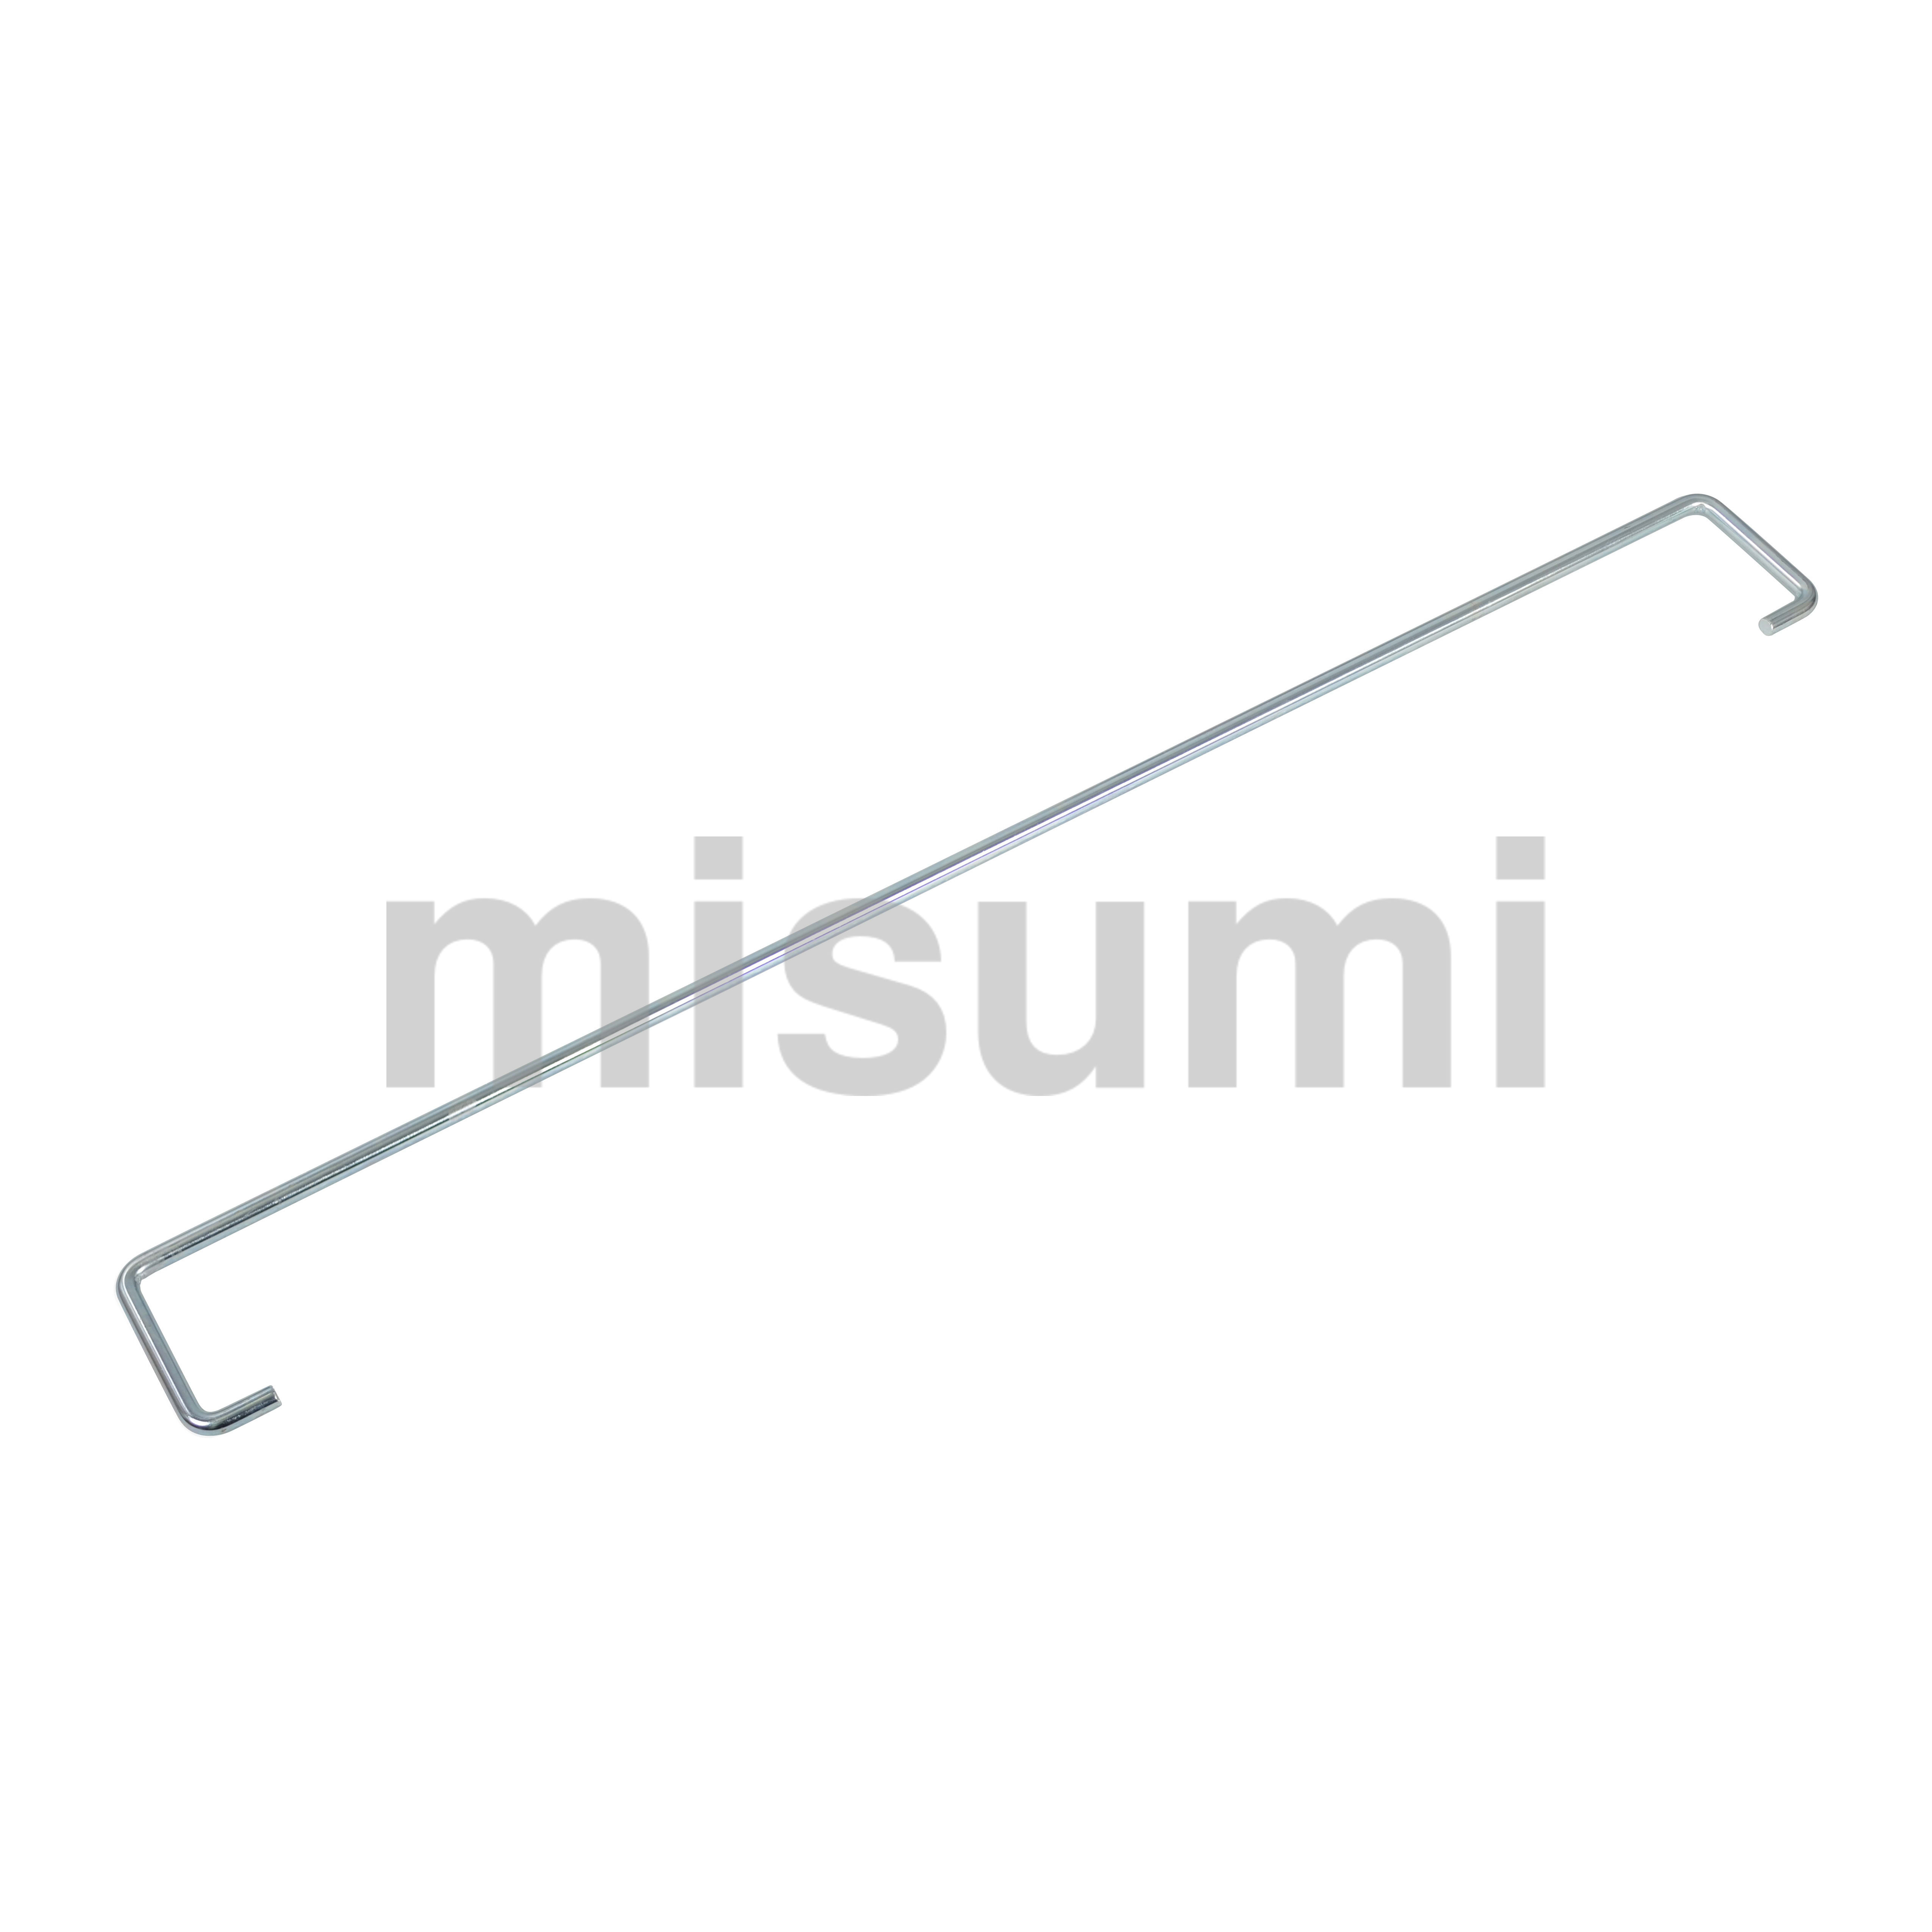 軽・中量棚の選定・通販 | MISUMI(ミスミ)